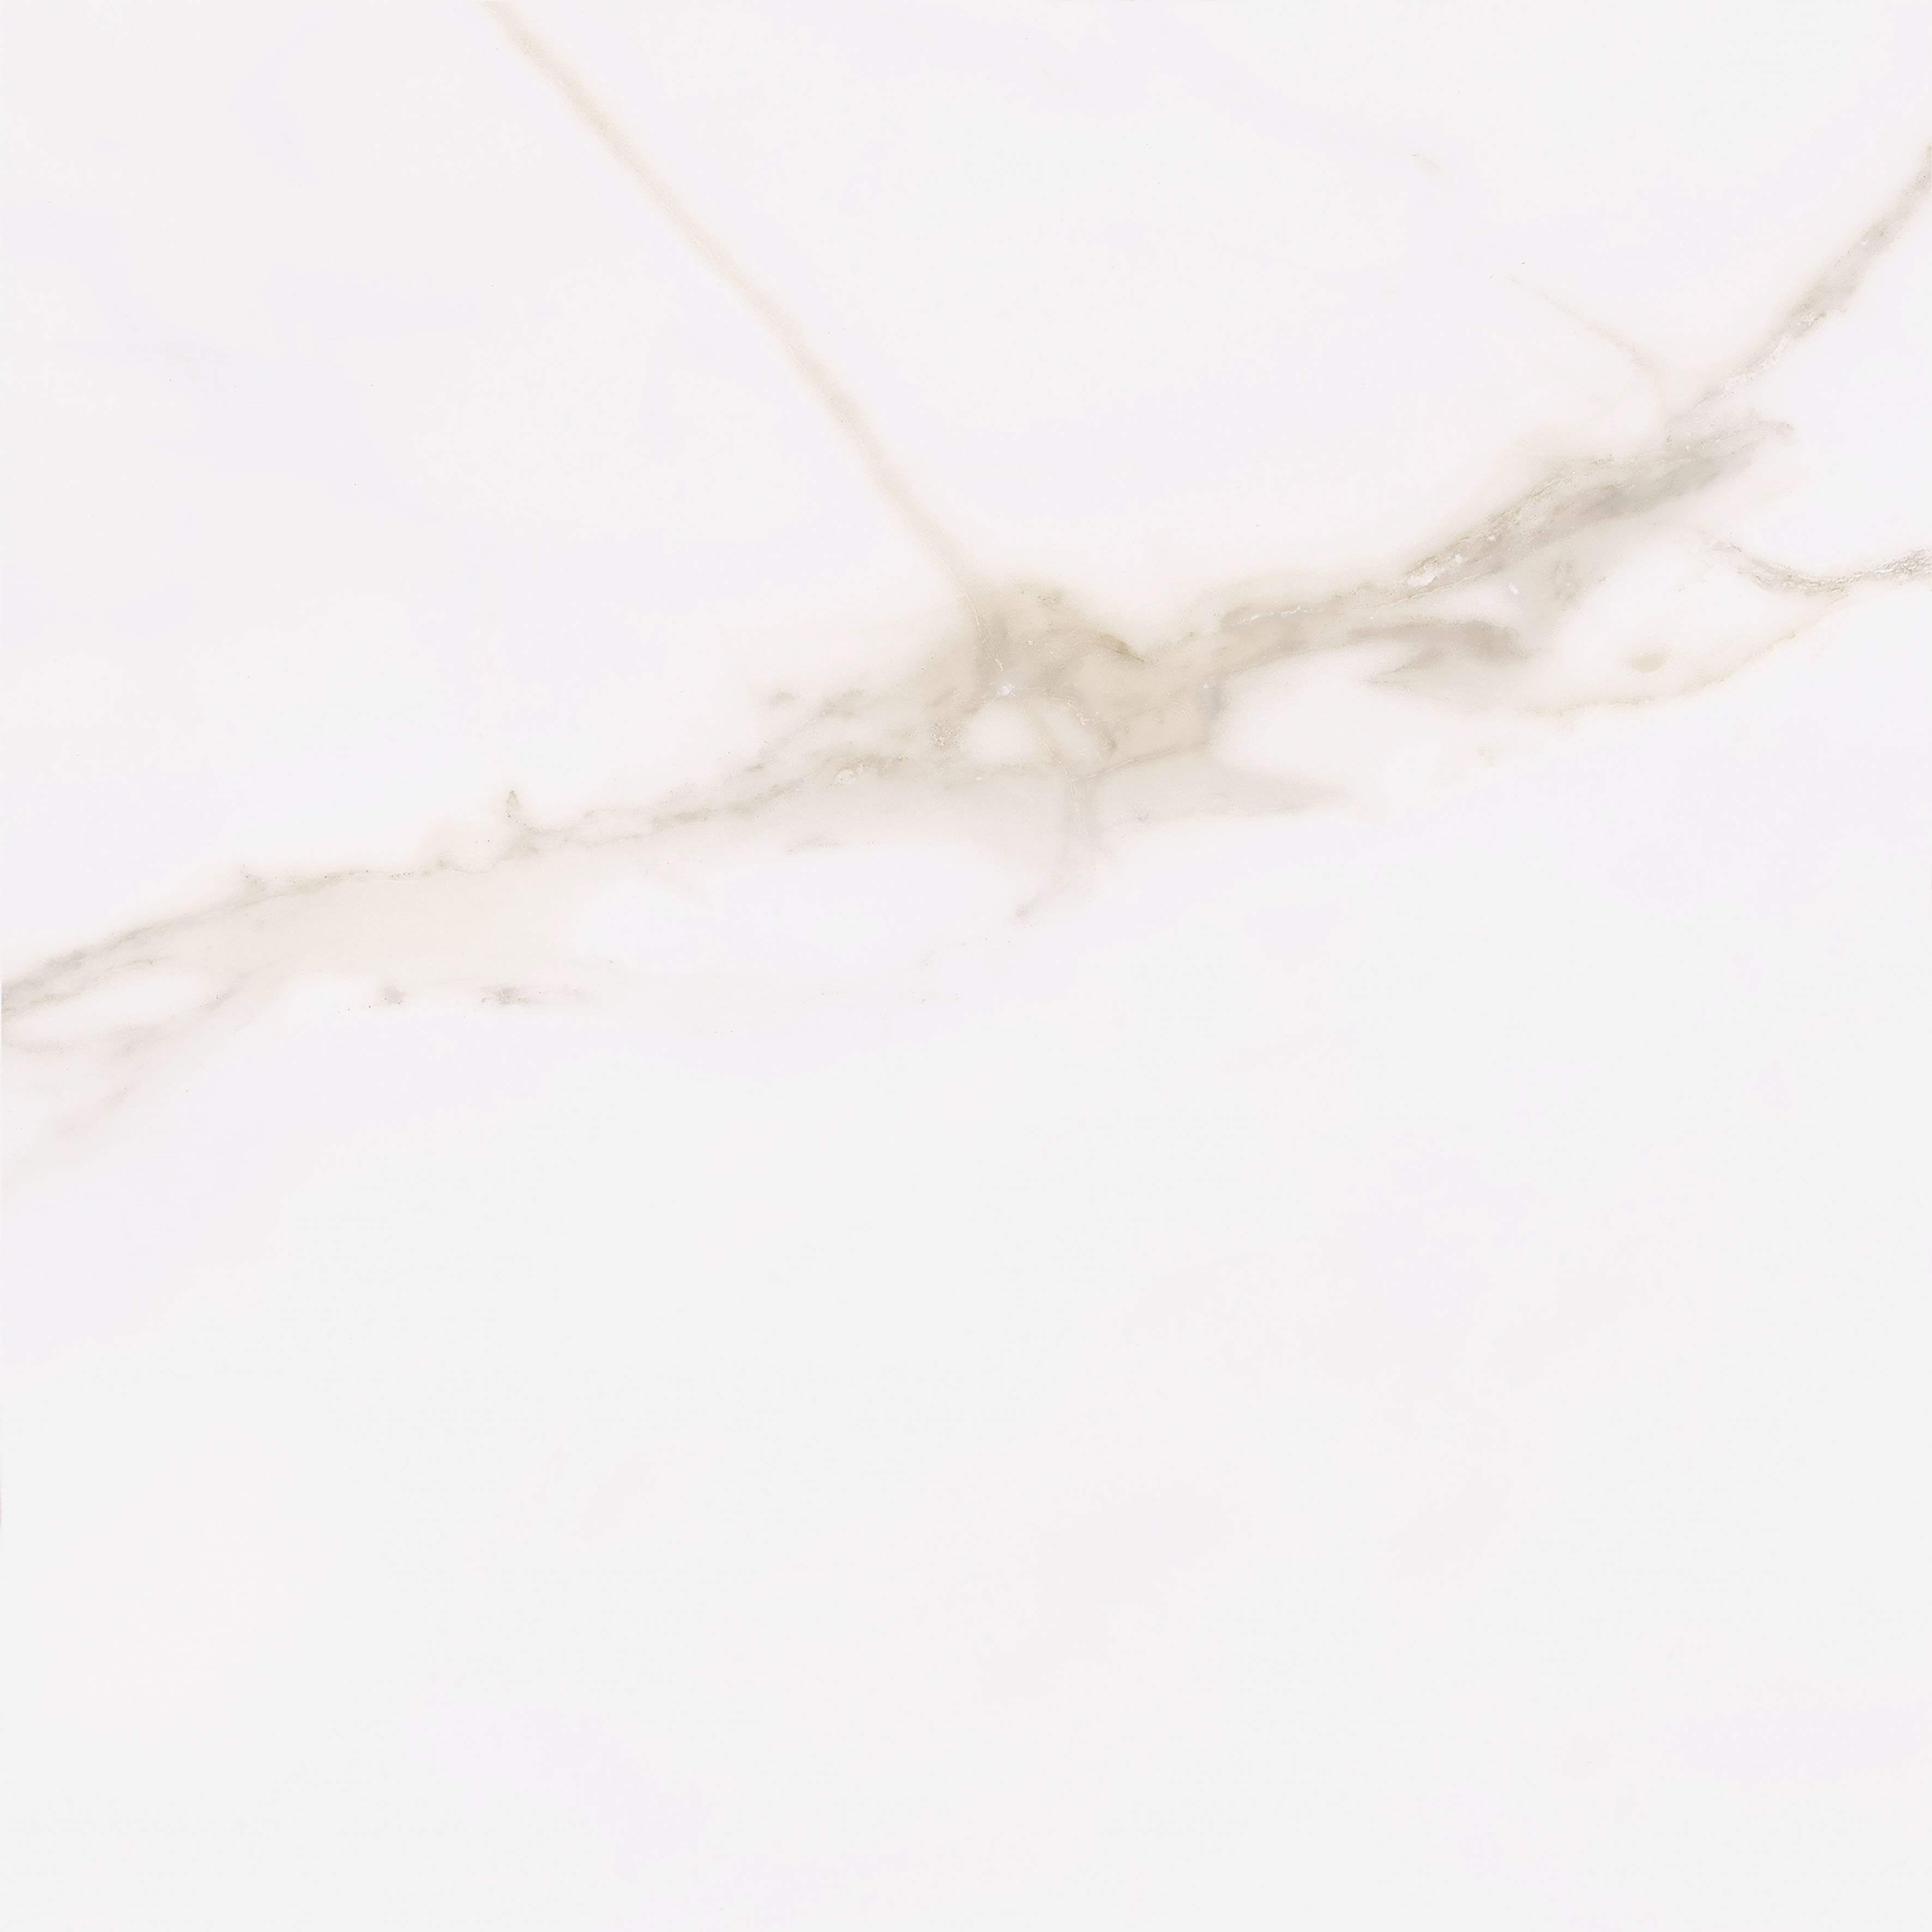 Urbanixx Gres Kalmar Bodenfliesen Marmoroptik Weiß matt 60x60cm rekt. 